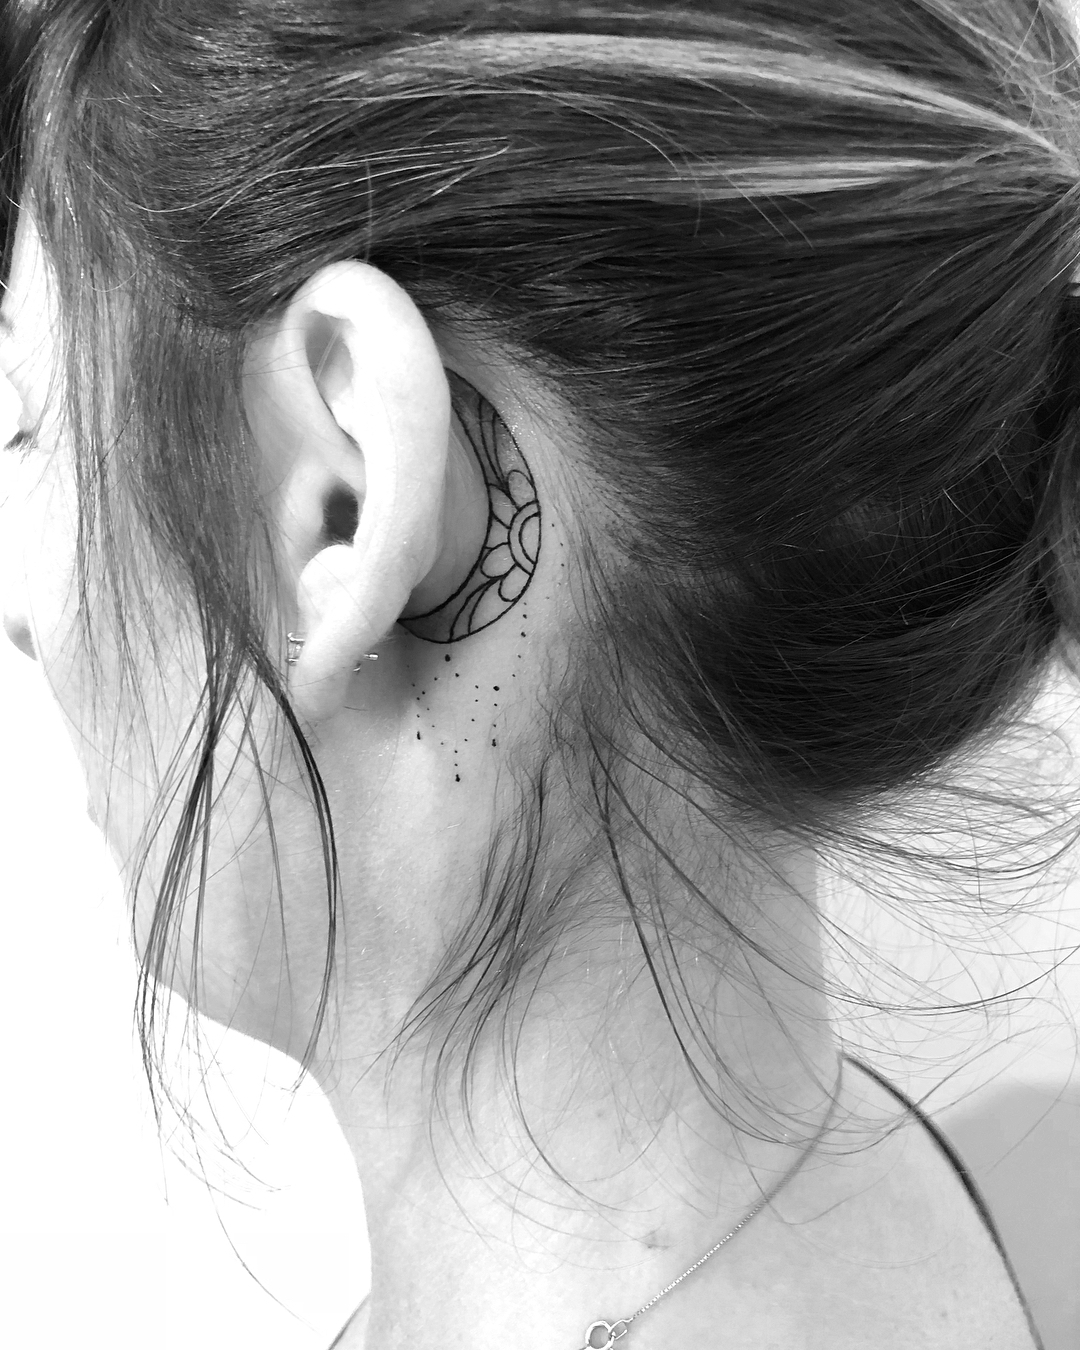 Linda Lua tatuada atrás da orelha. Discreta e feminina.